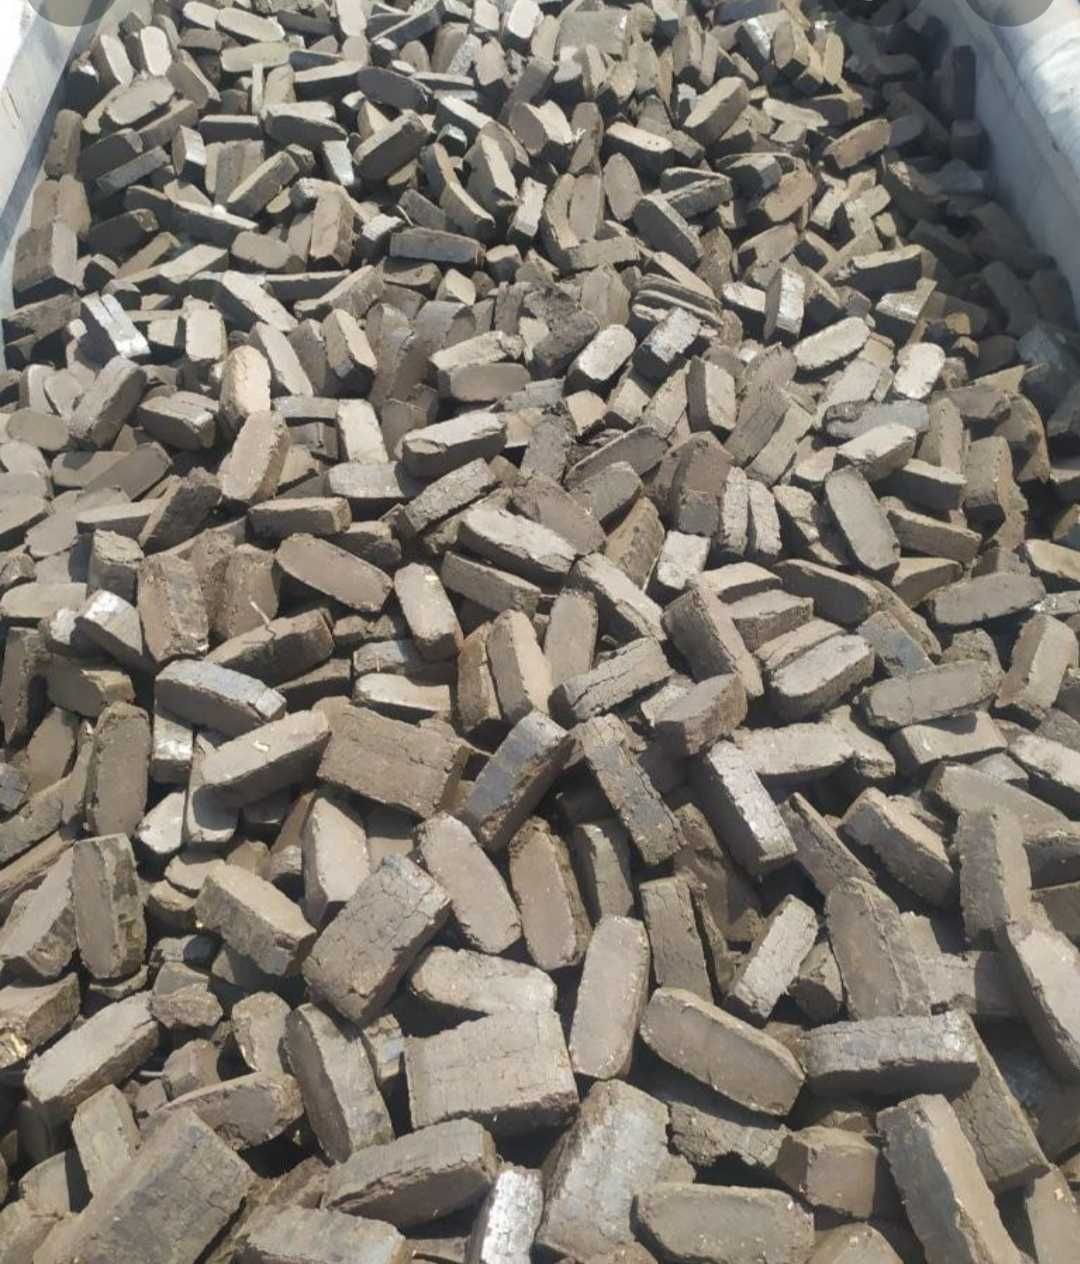 Węgiel 1100 zł tona.drewno woj obrzynki drzewo zrzyny węgiel